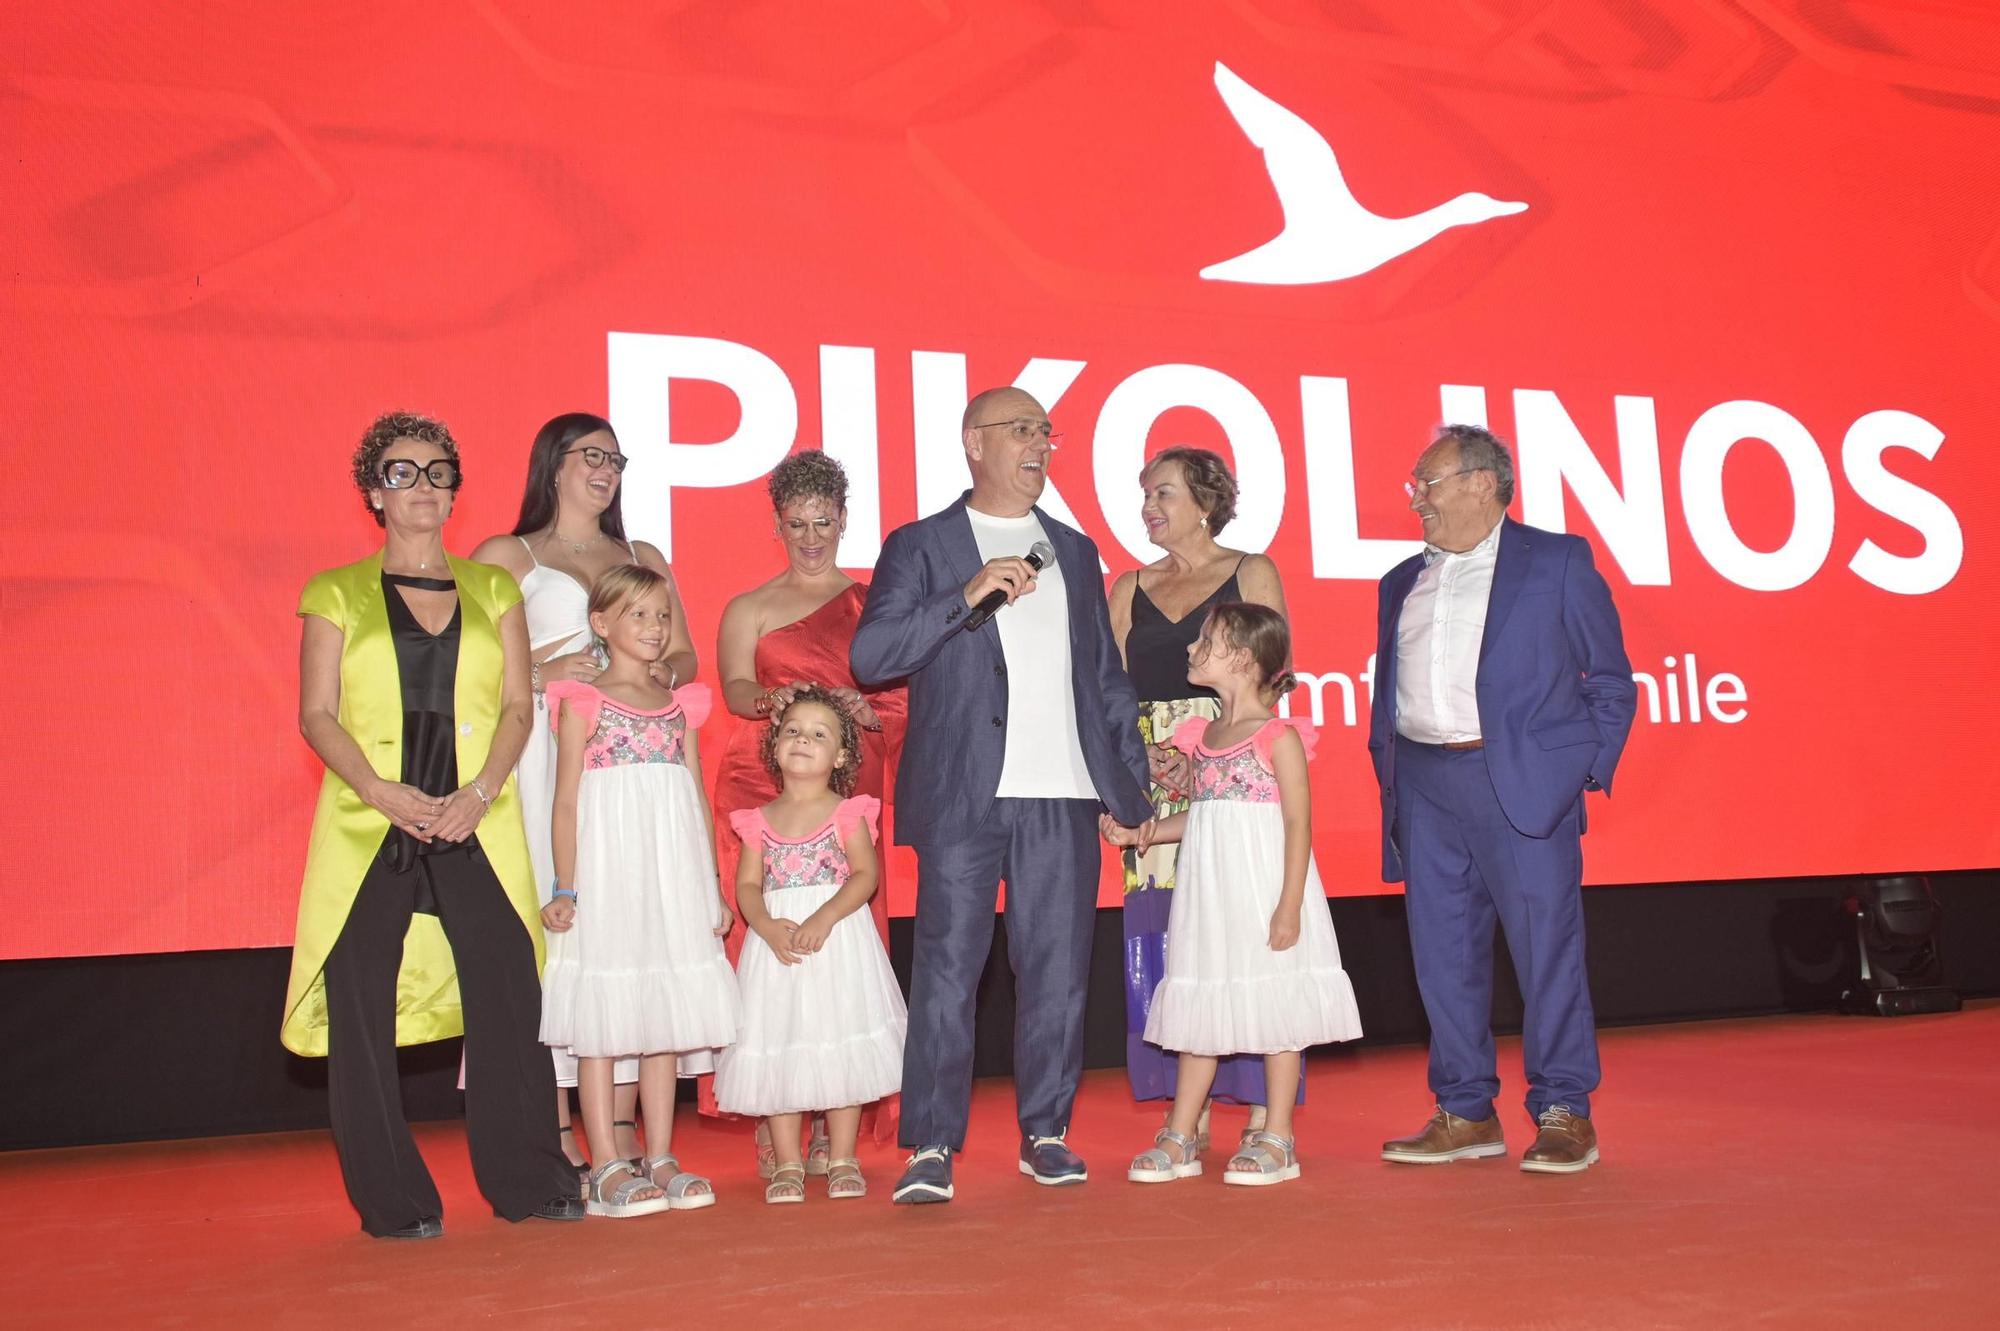 Así celebra Pikolinos su 40 Aniversario en Elche